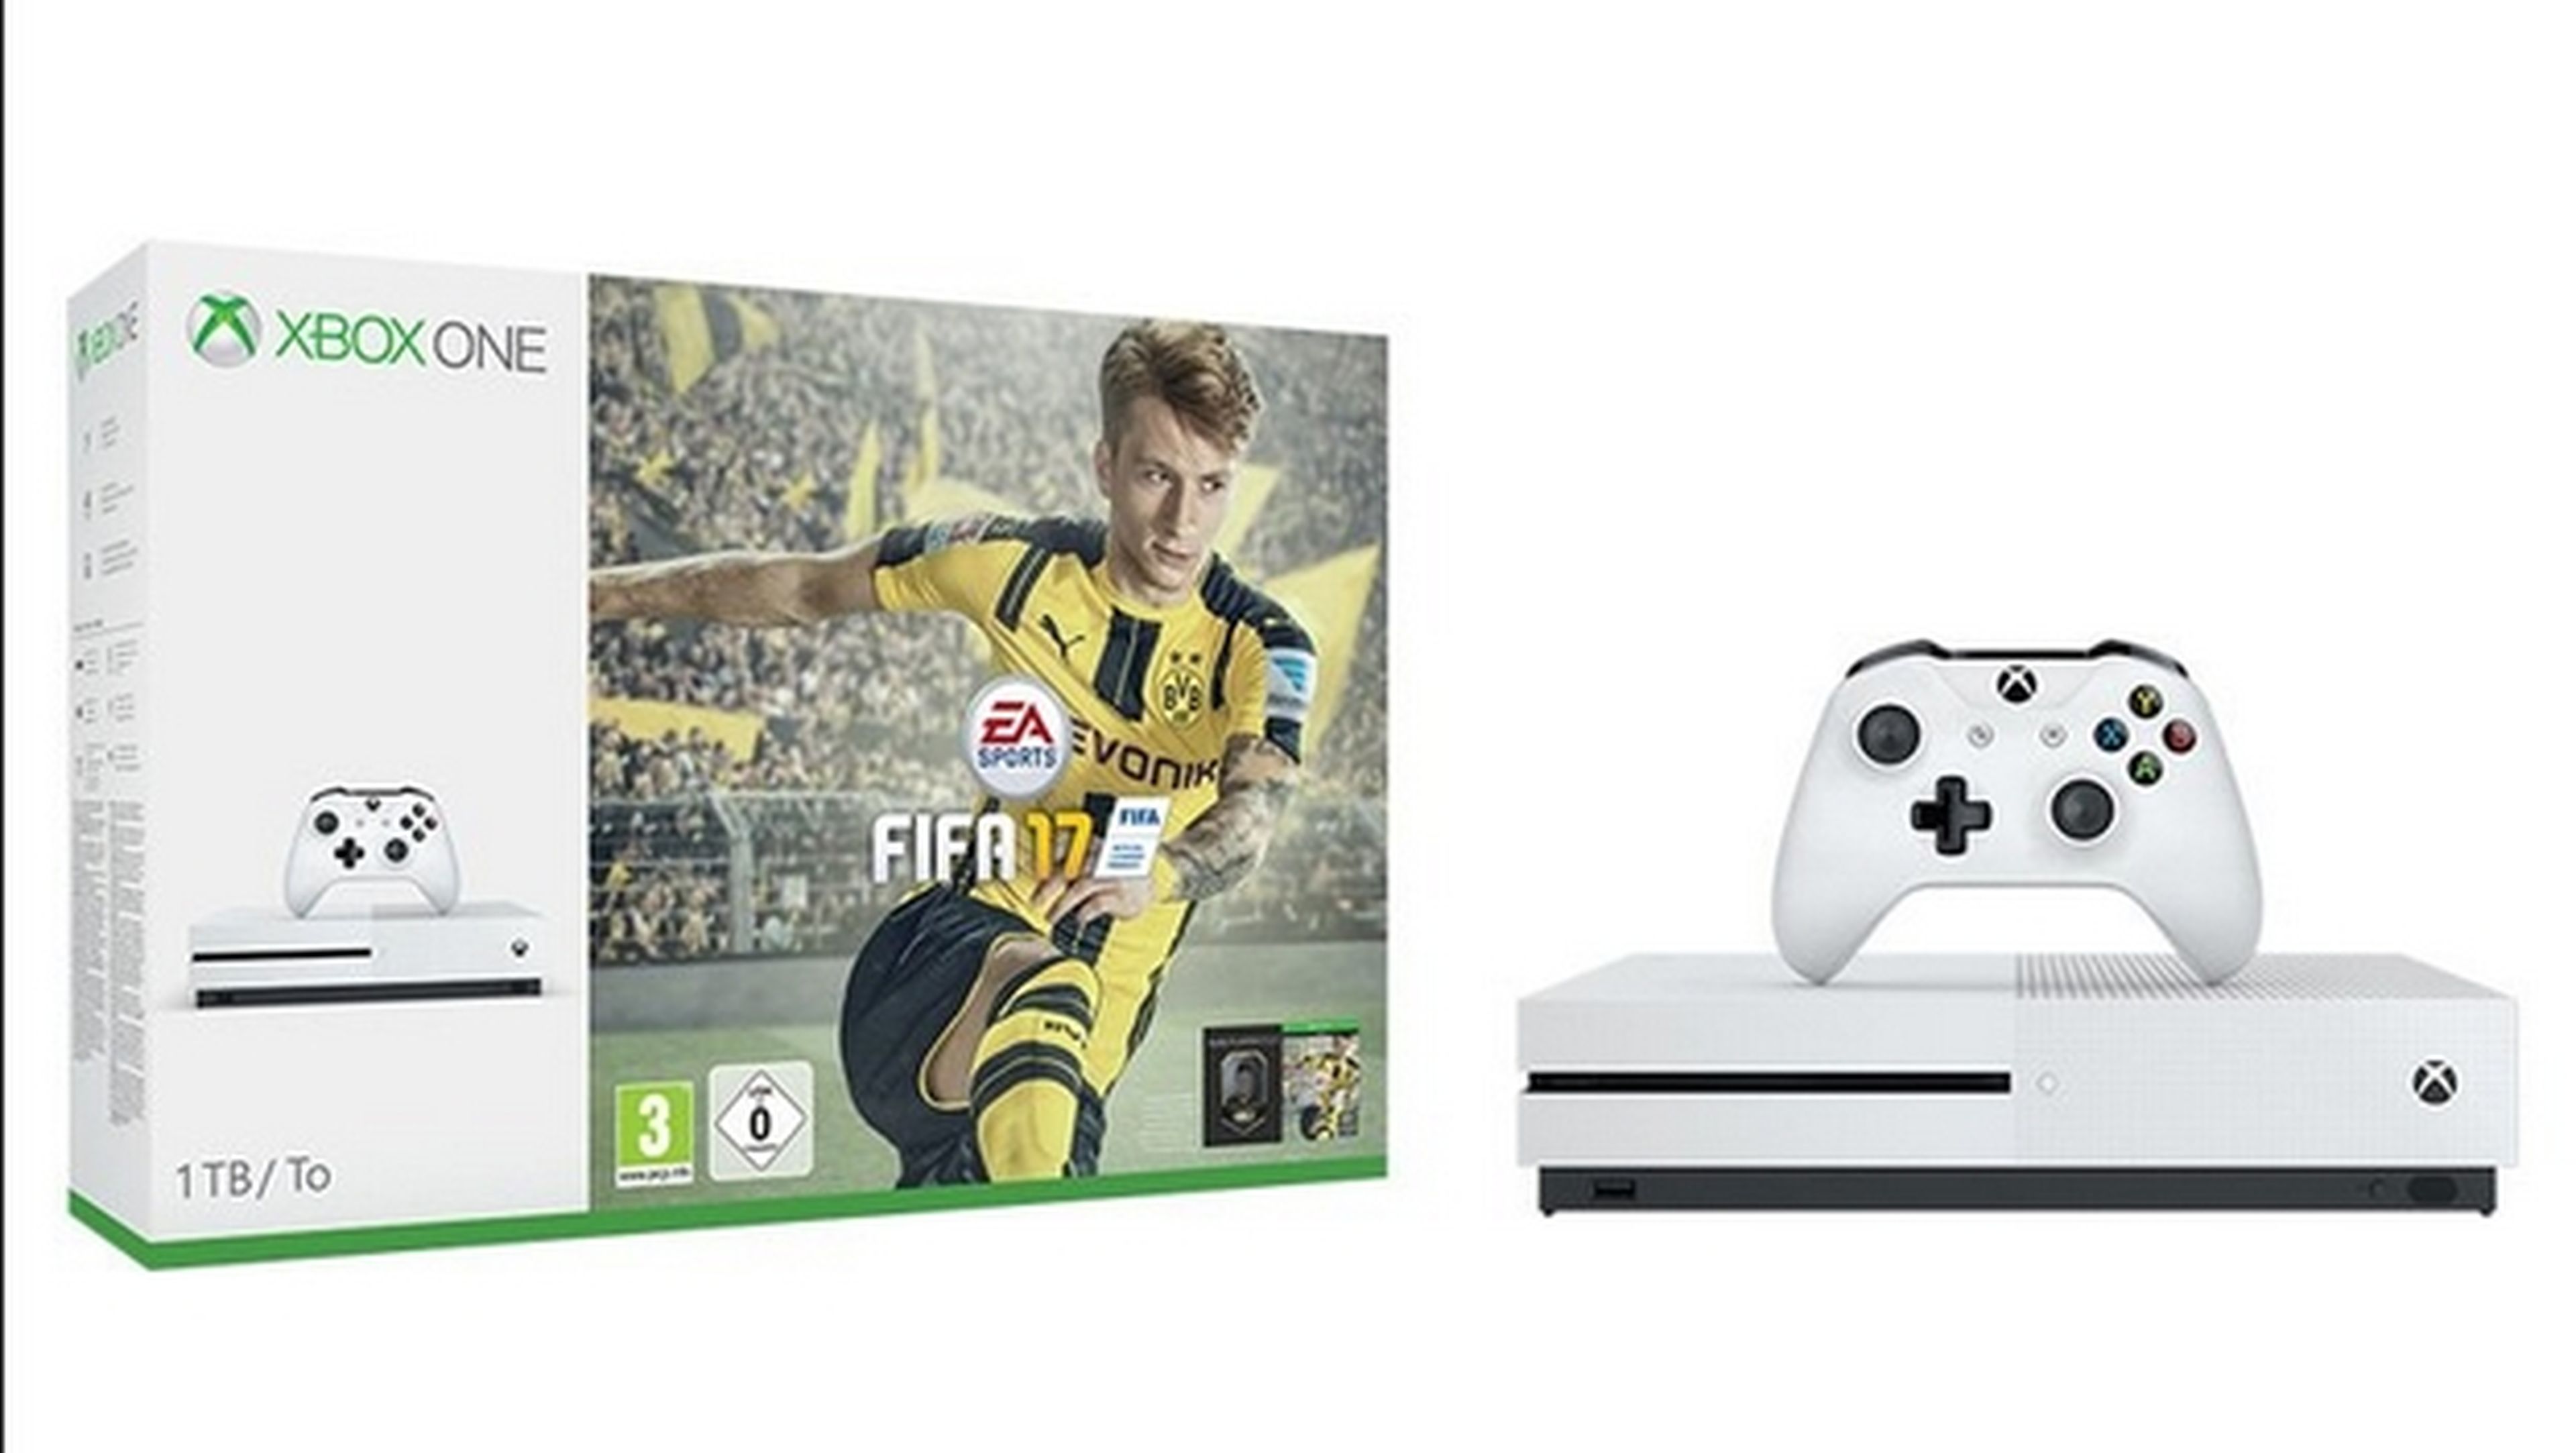 Xbox One S con FIFA 17 gratis por 299 euros